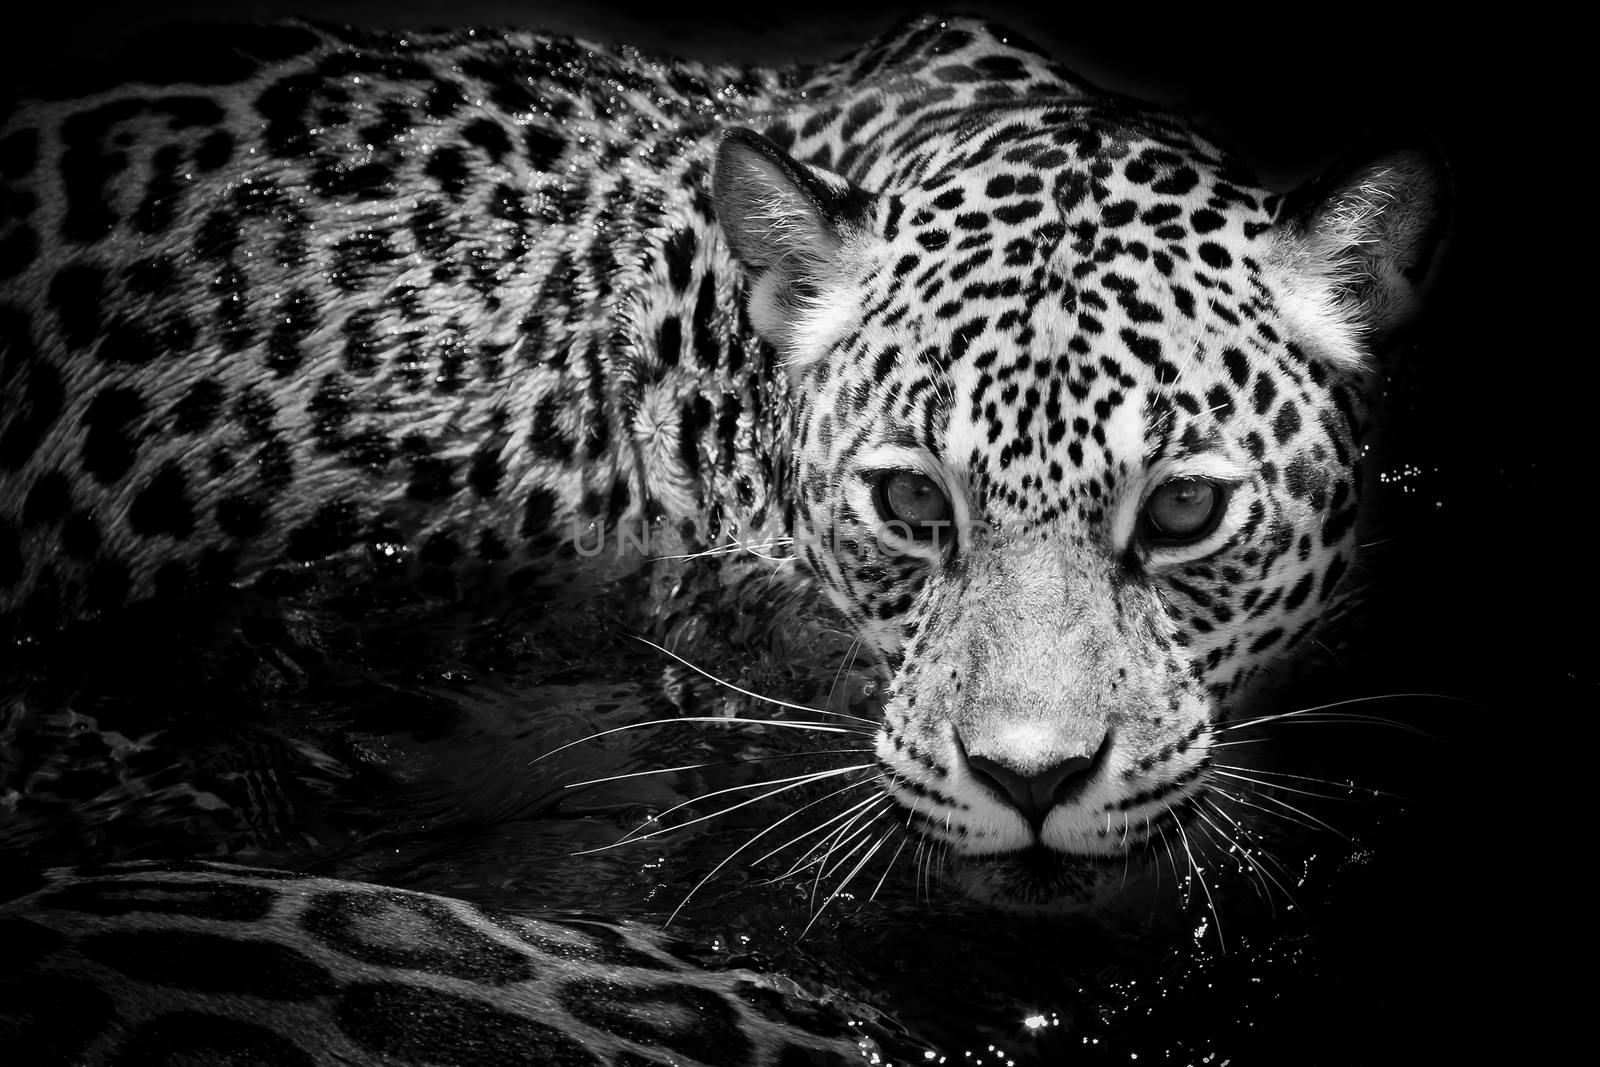 Jaguar portrait by art9858